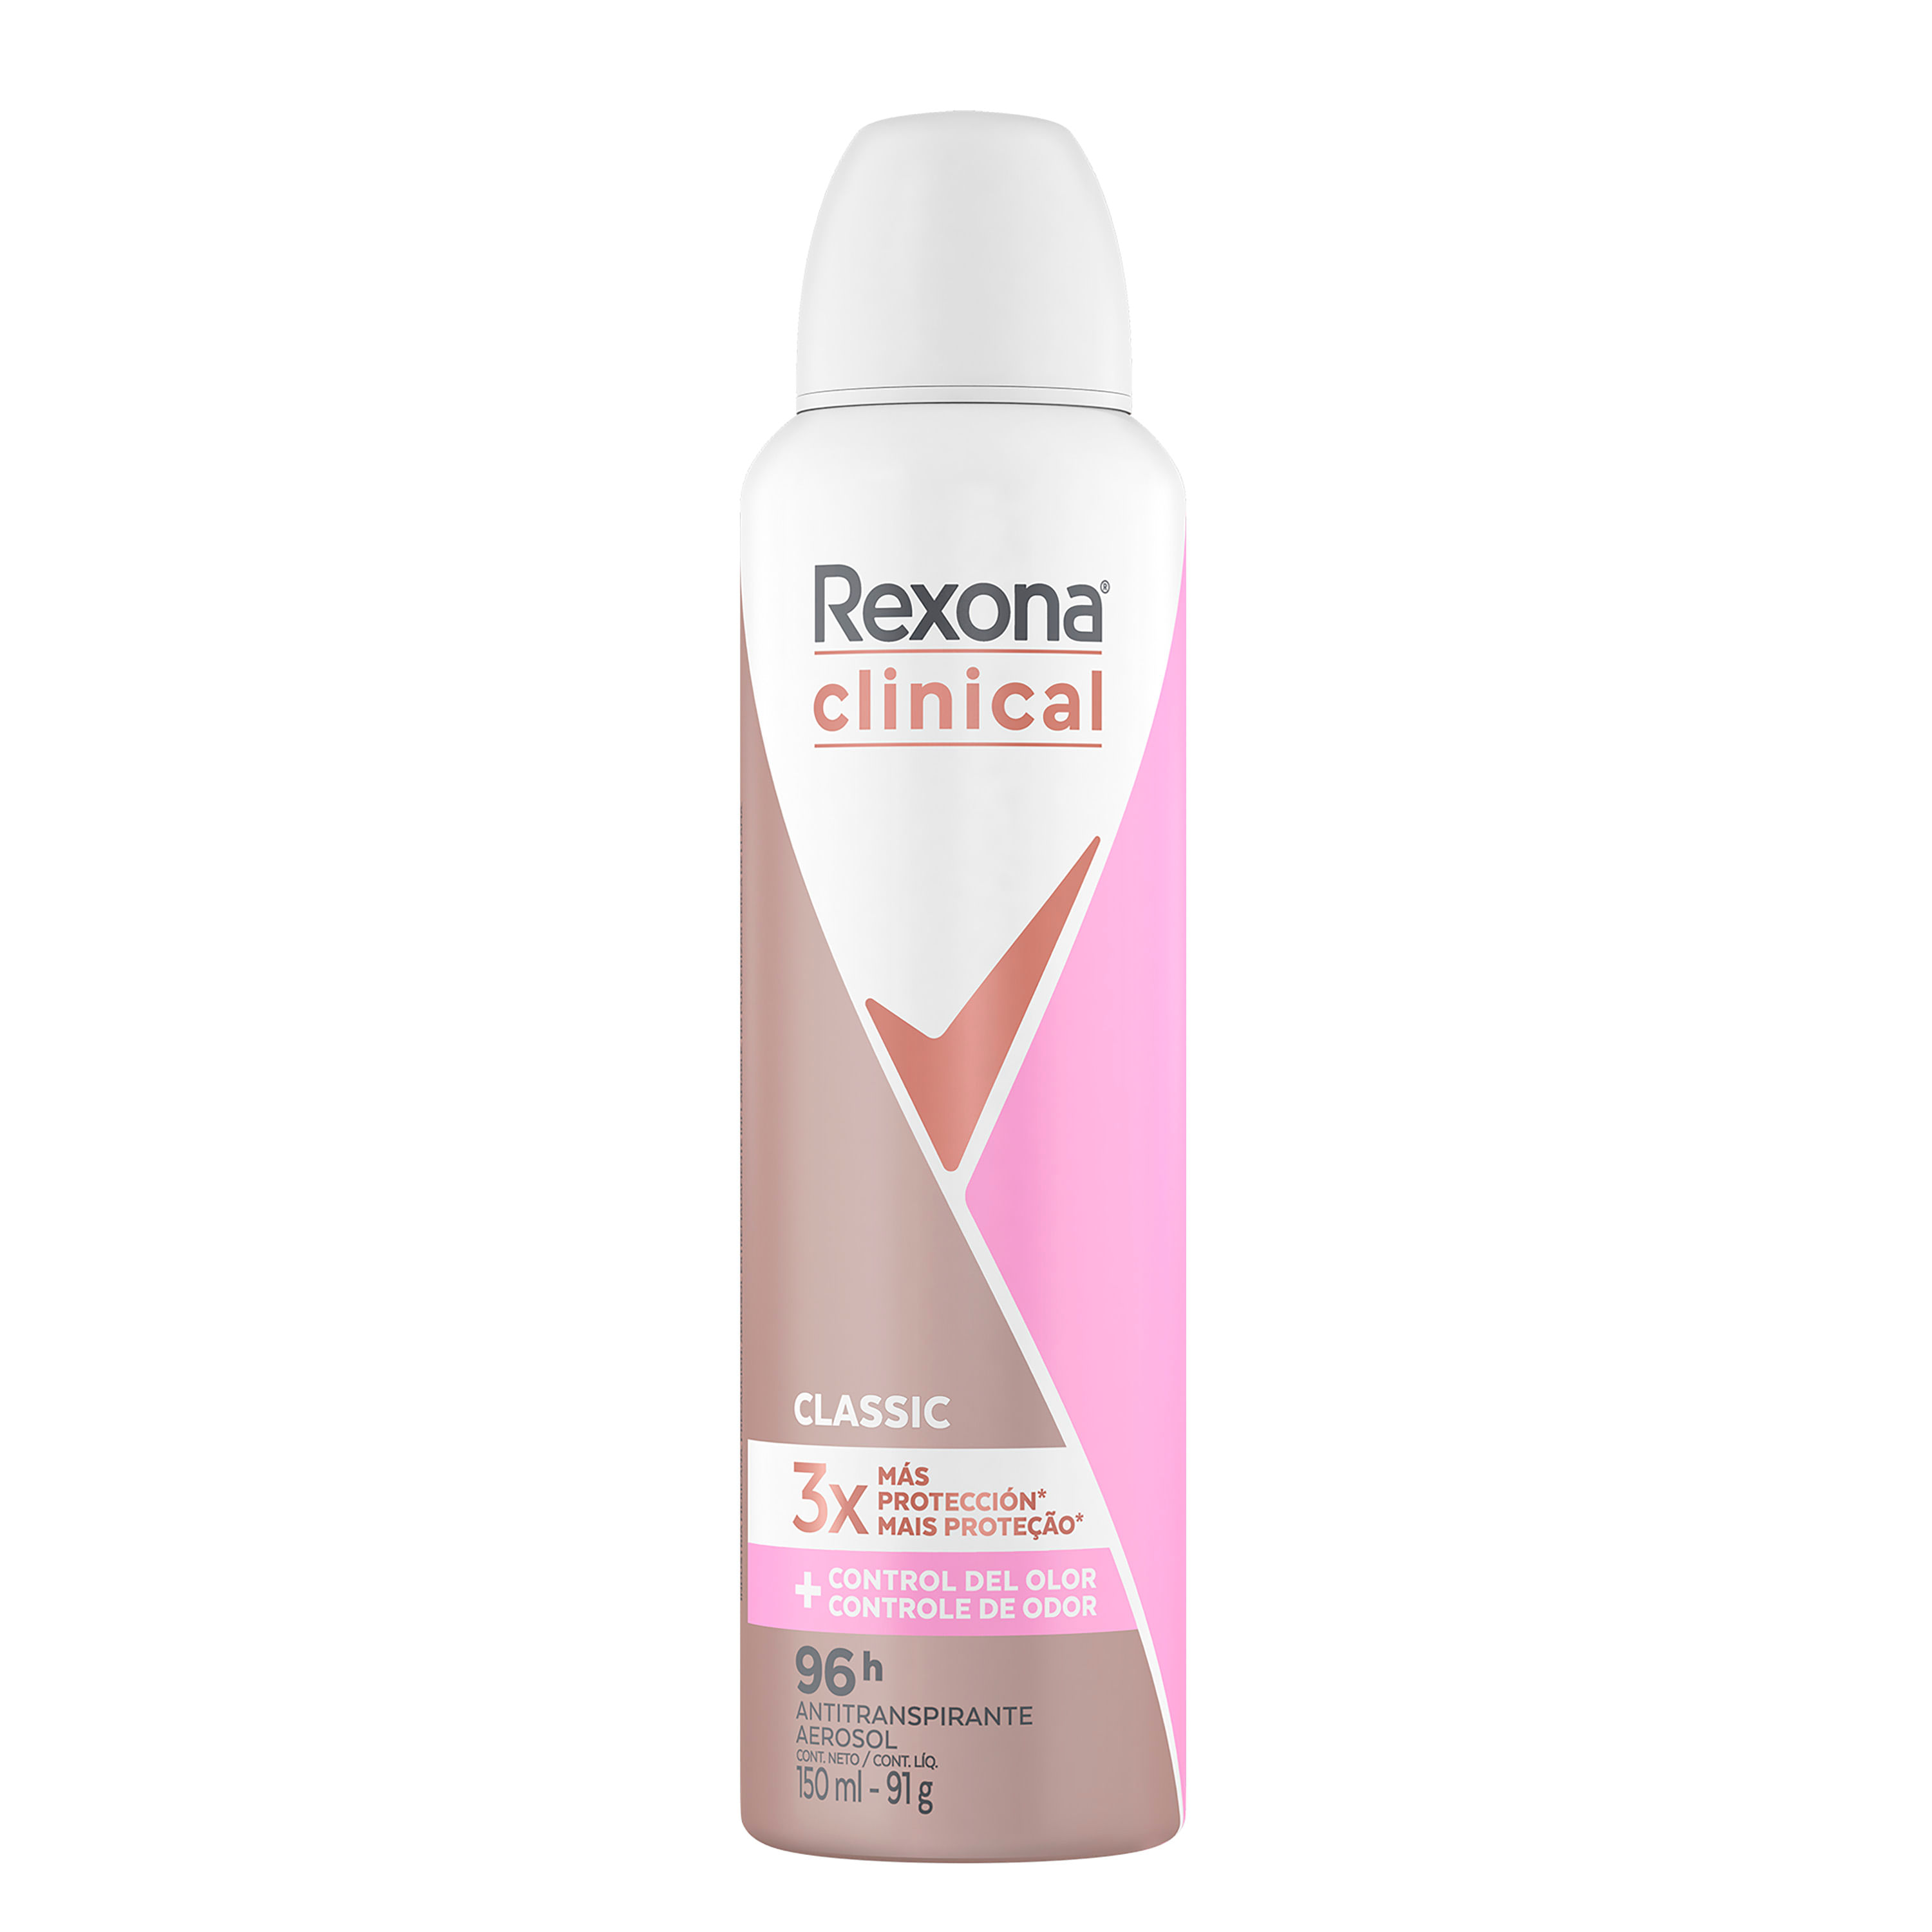 Comprar Desodorante Rexona Mujer Spray Clinical Expert -150ml, Walmart  Guatemala - Maxi Despensa